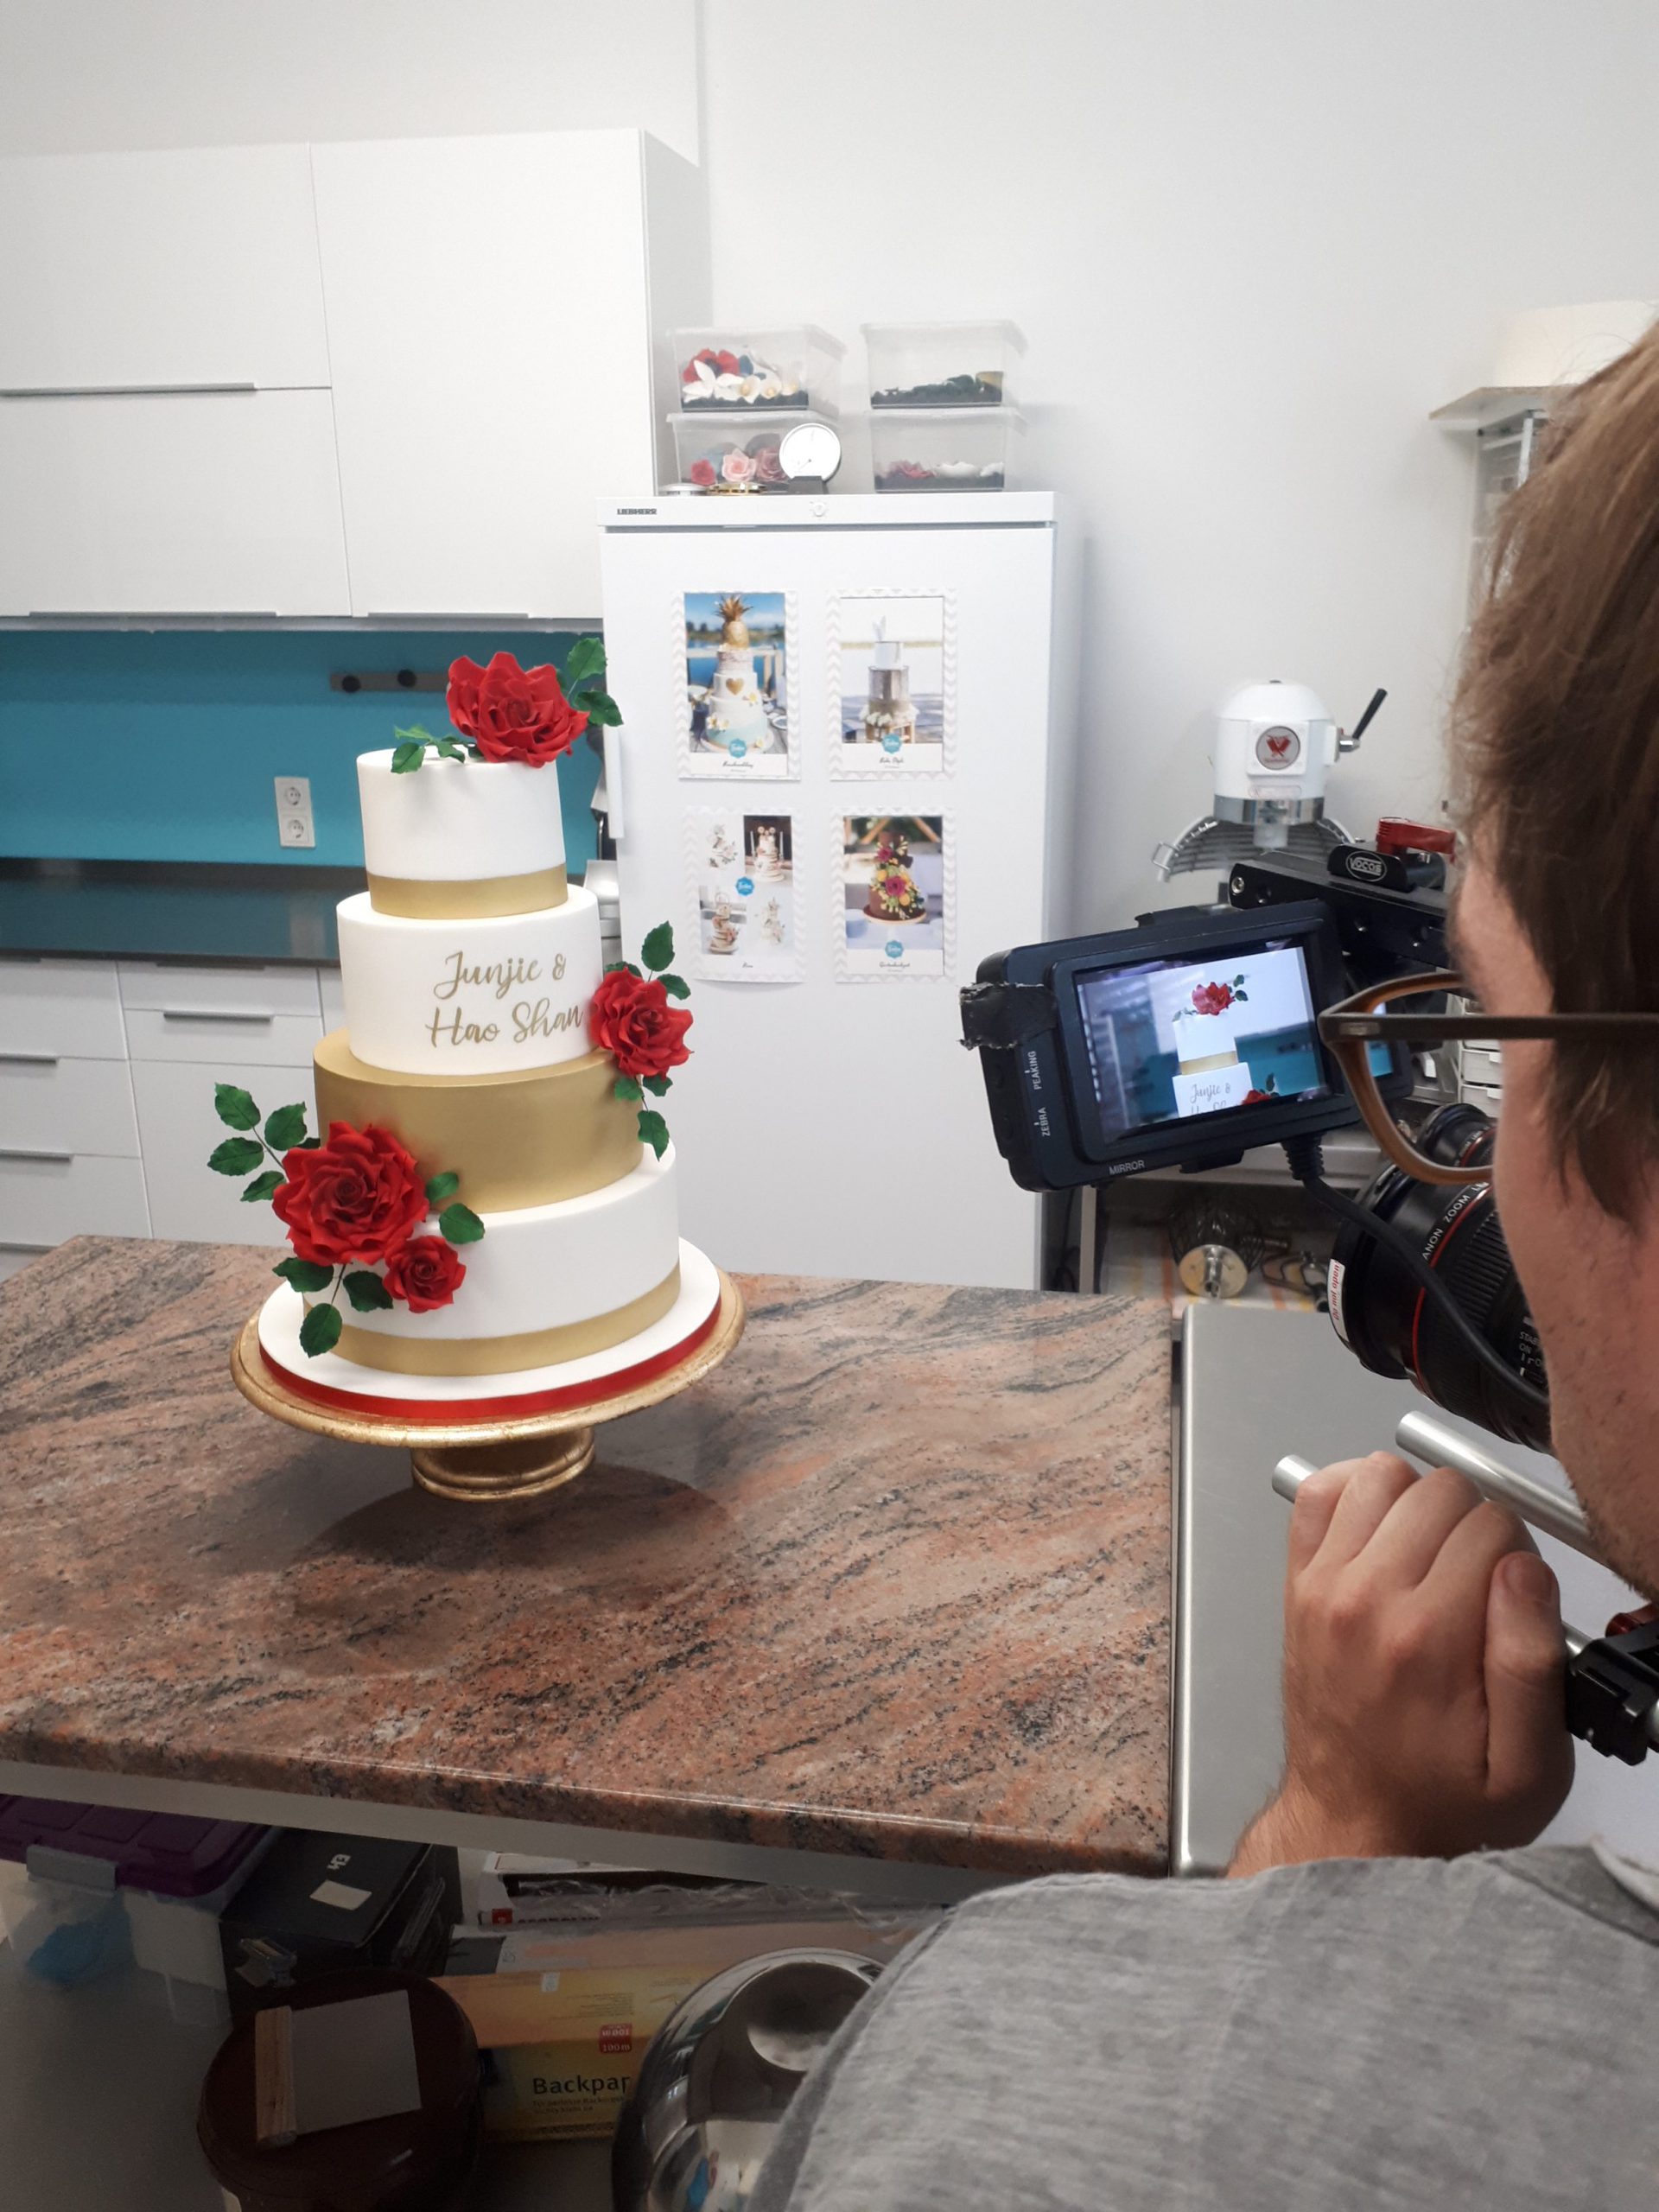 Kameramann von hinten, der eine vierstöckige Hochzeitstorte film in der Küche des Tortenstudios